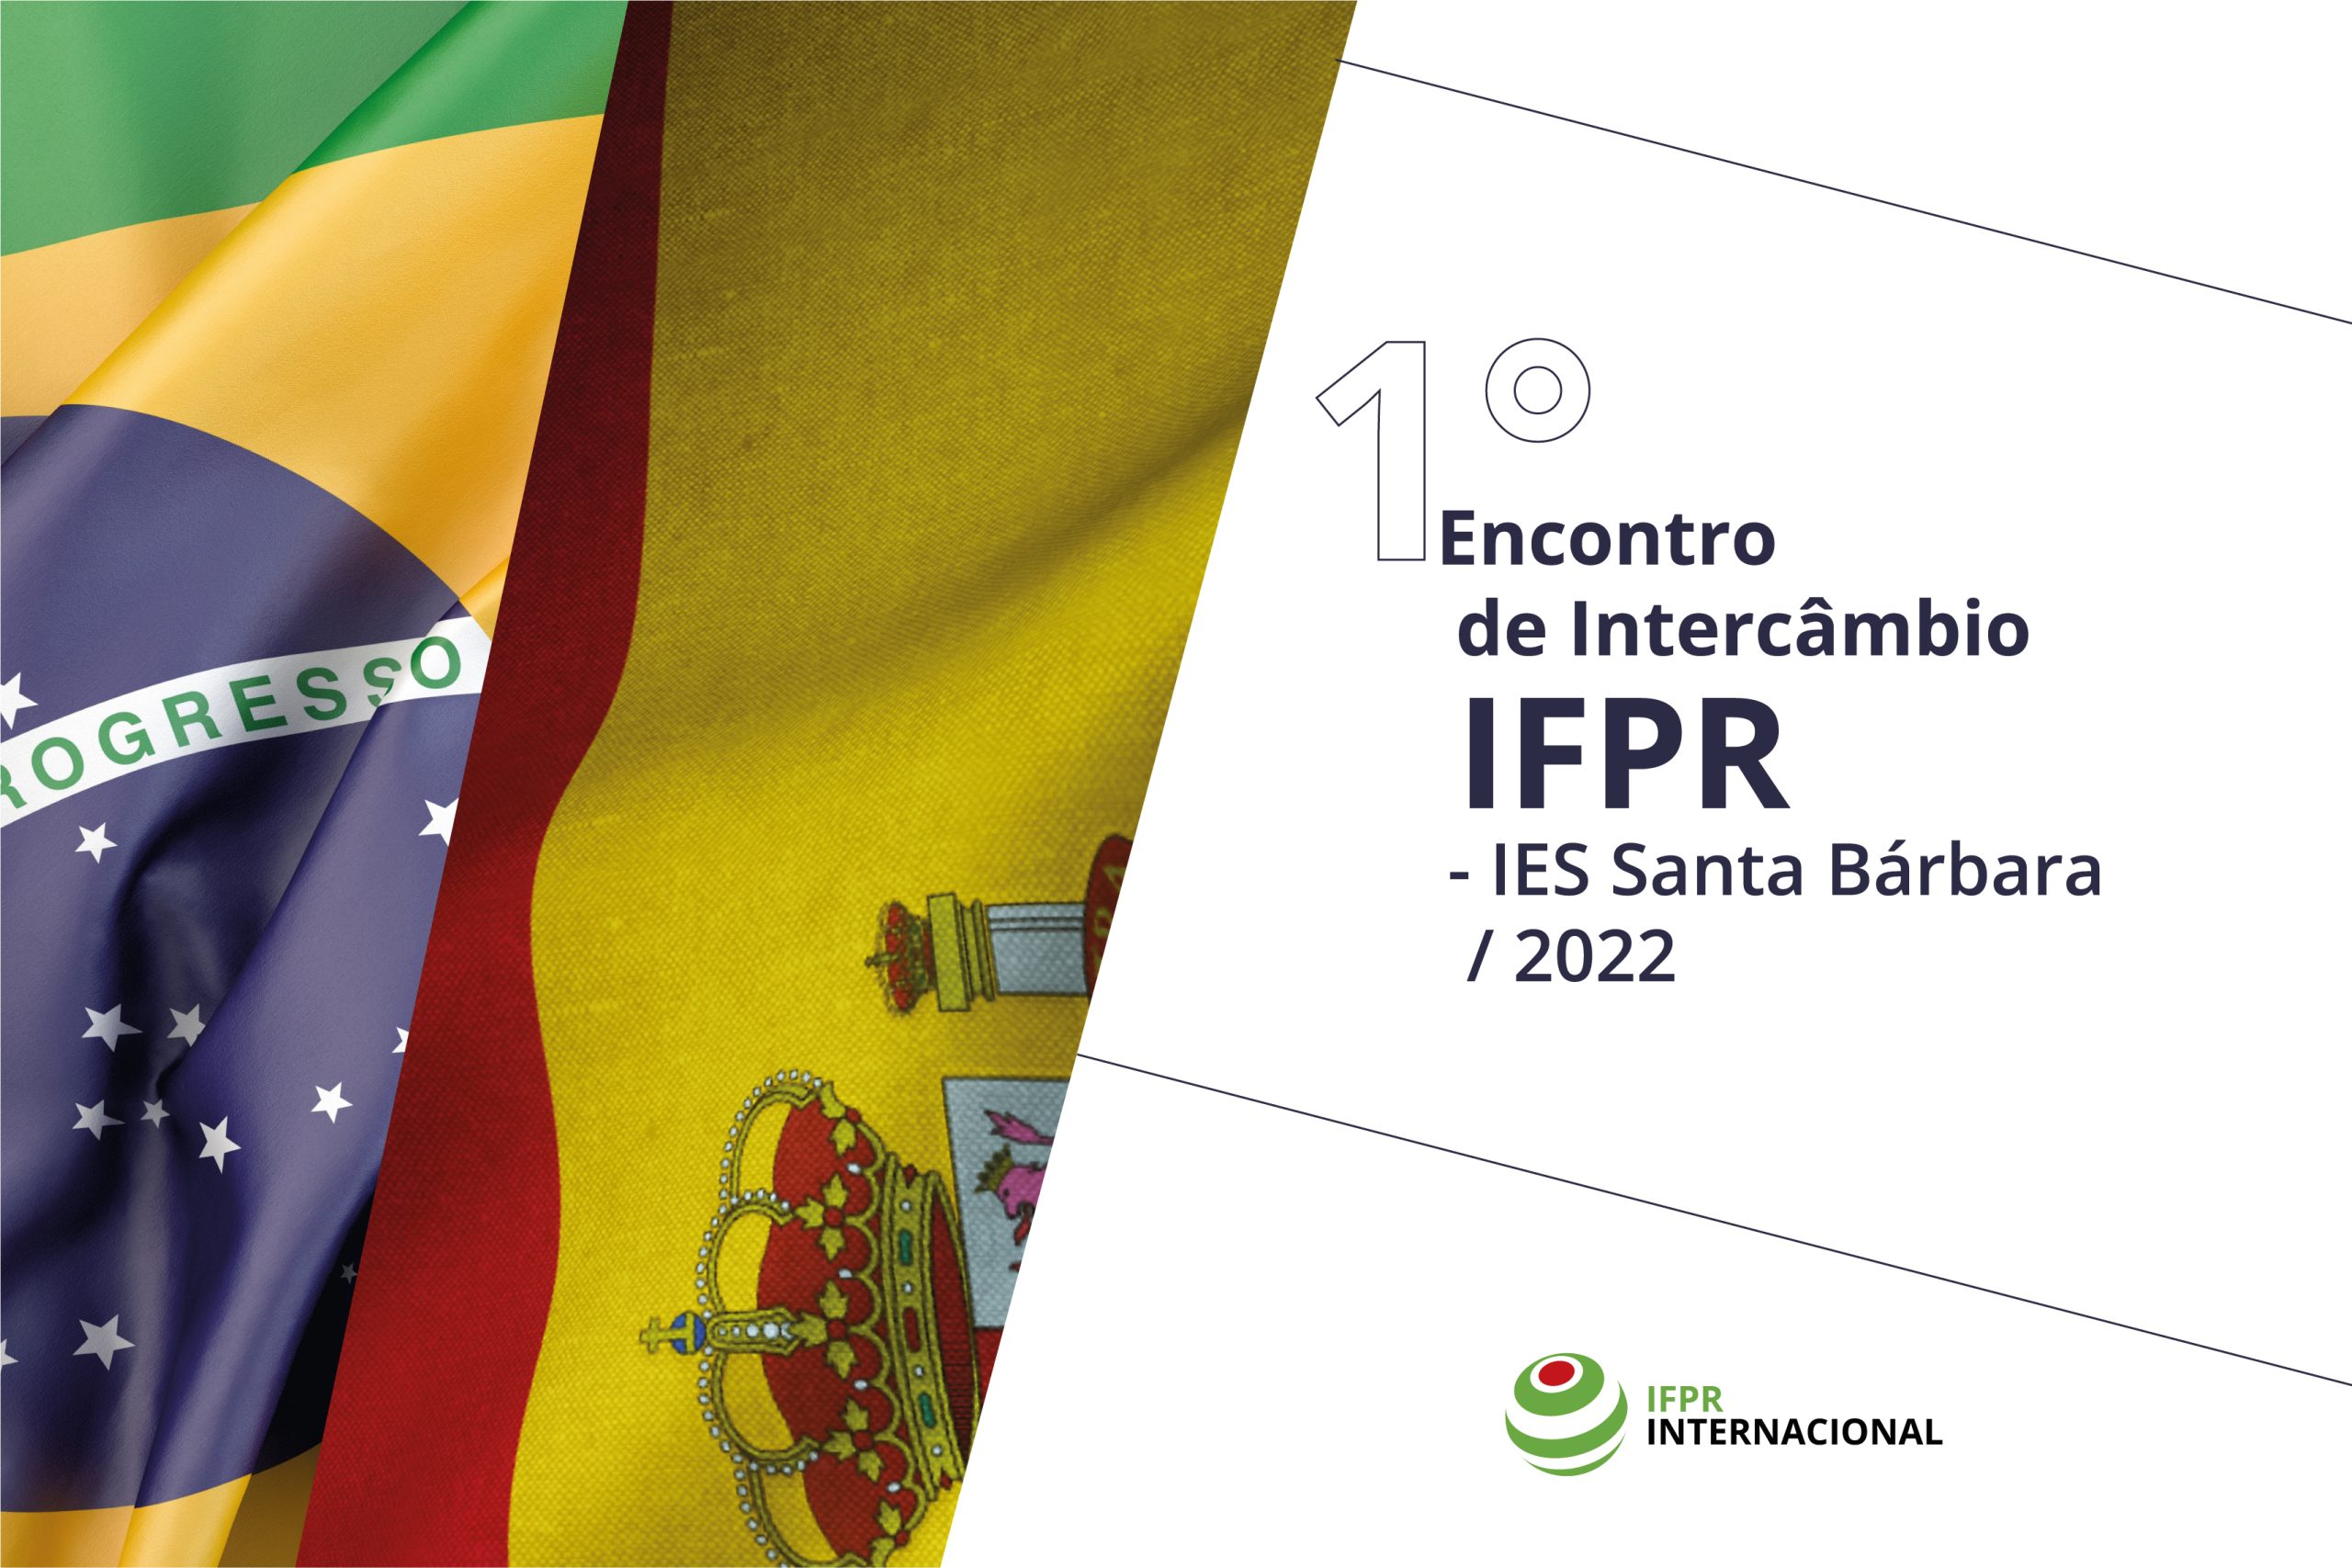 Parceria internacional IFPR e IES - Santa Bárbara (Espanha).